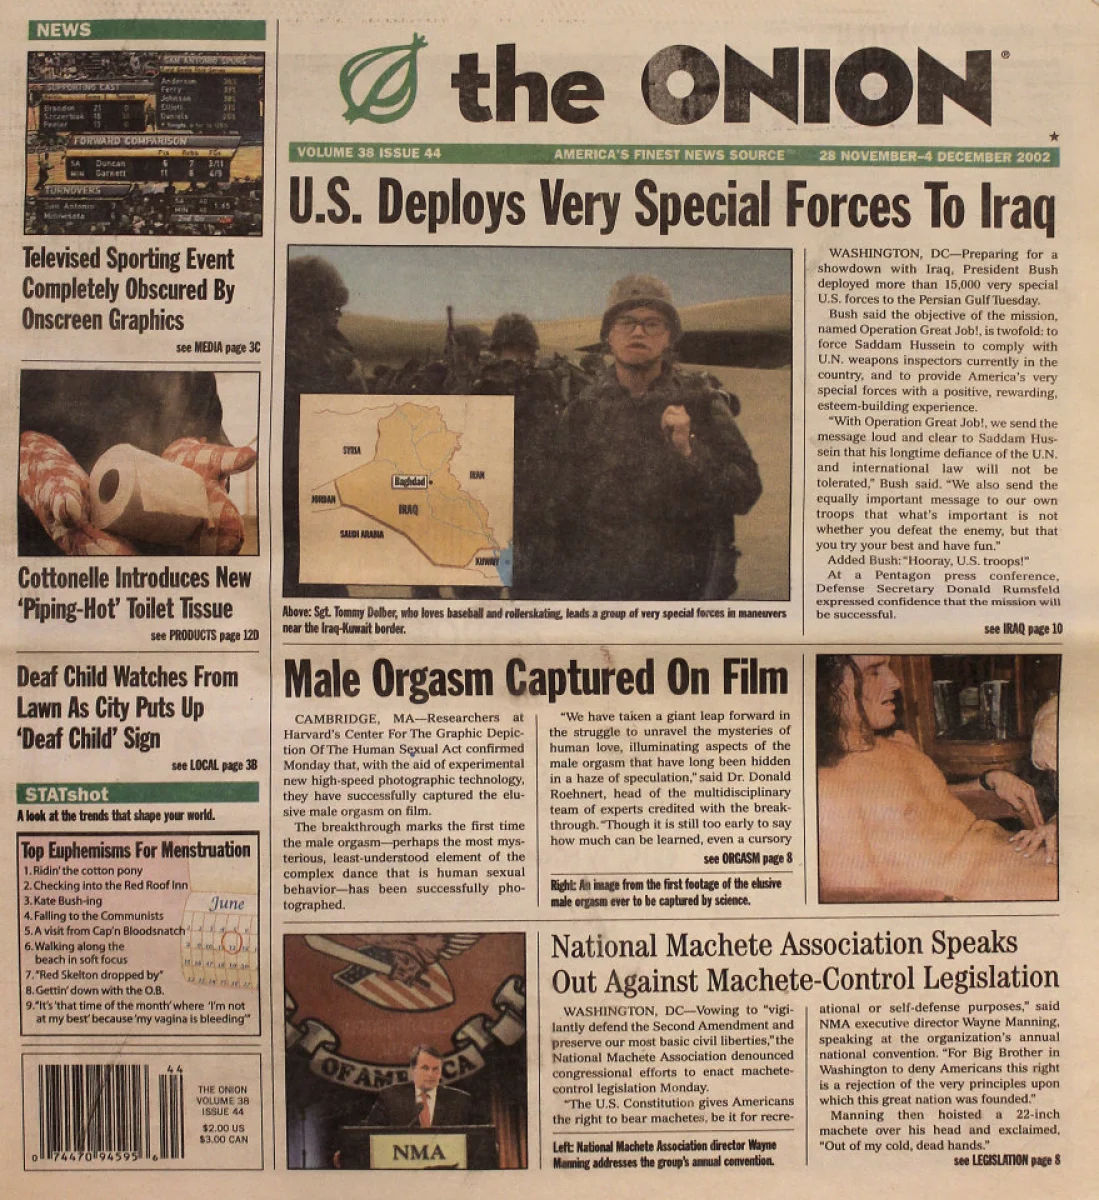 The Onion | November 28, 2002 at Wolfgang's